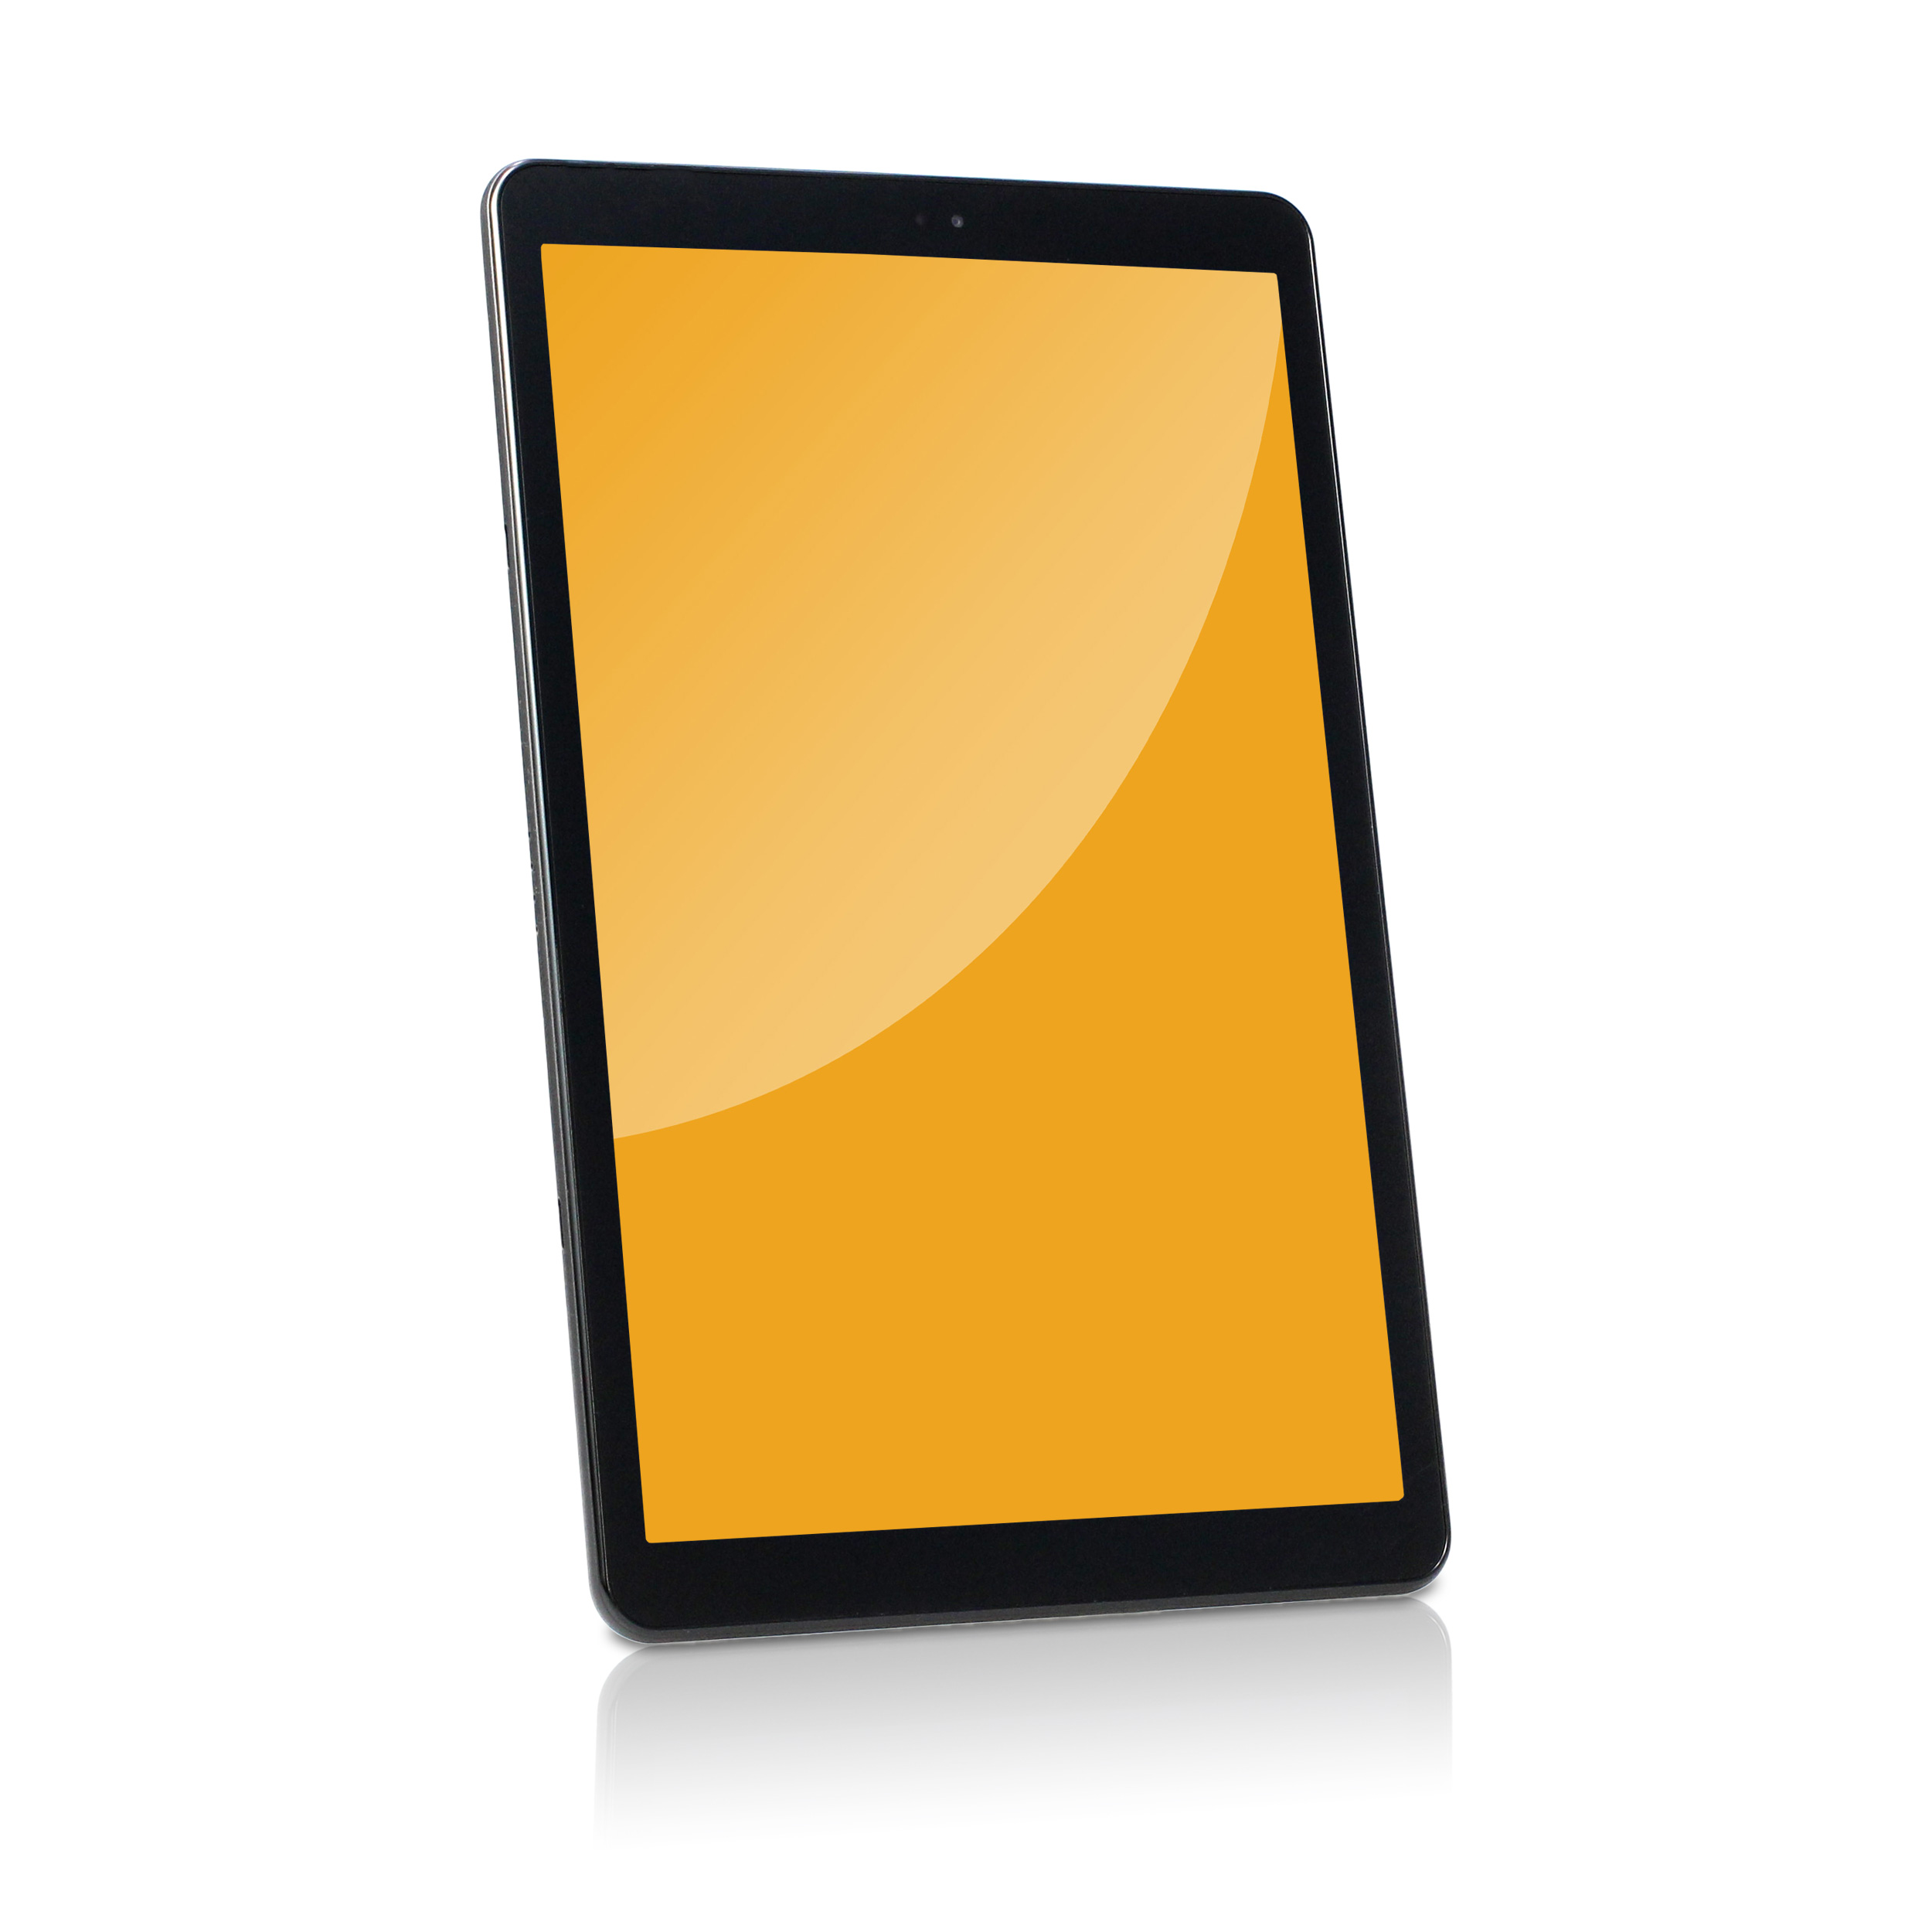 Samsung Galaxy Tab A 10.5 SM-T595 LTE Black